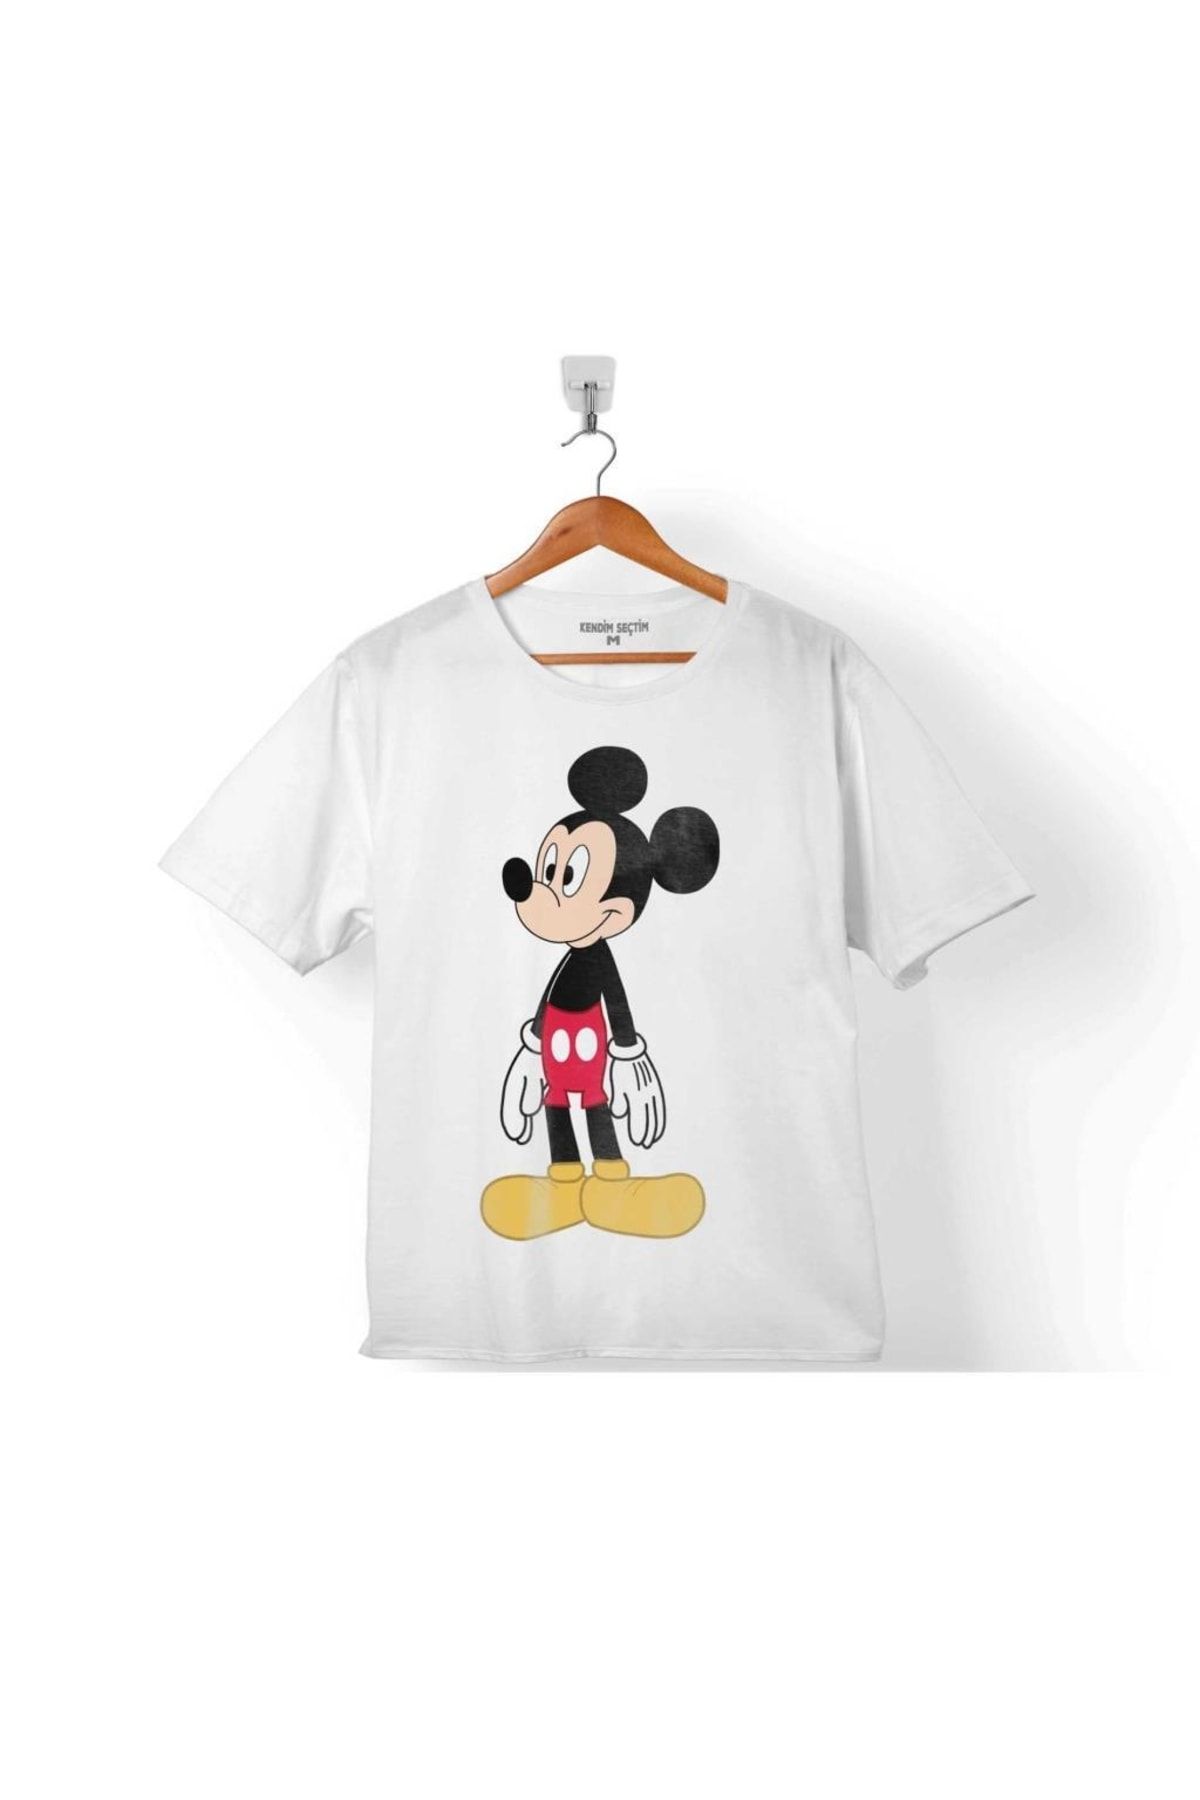 Kendim Seçtim Mıckey Mouse Mıkı Logo Çocuk Tişört